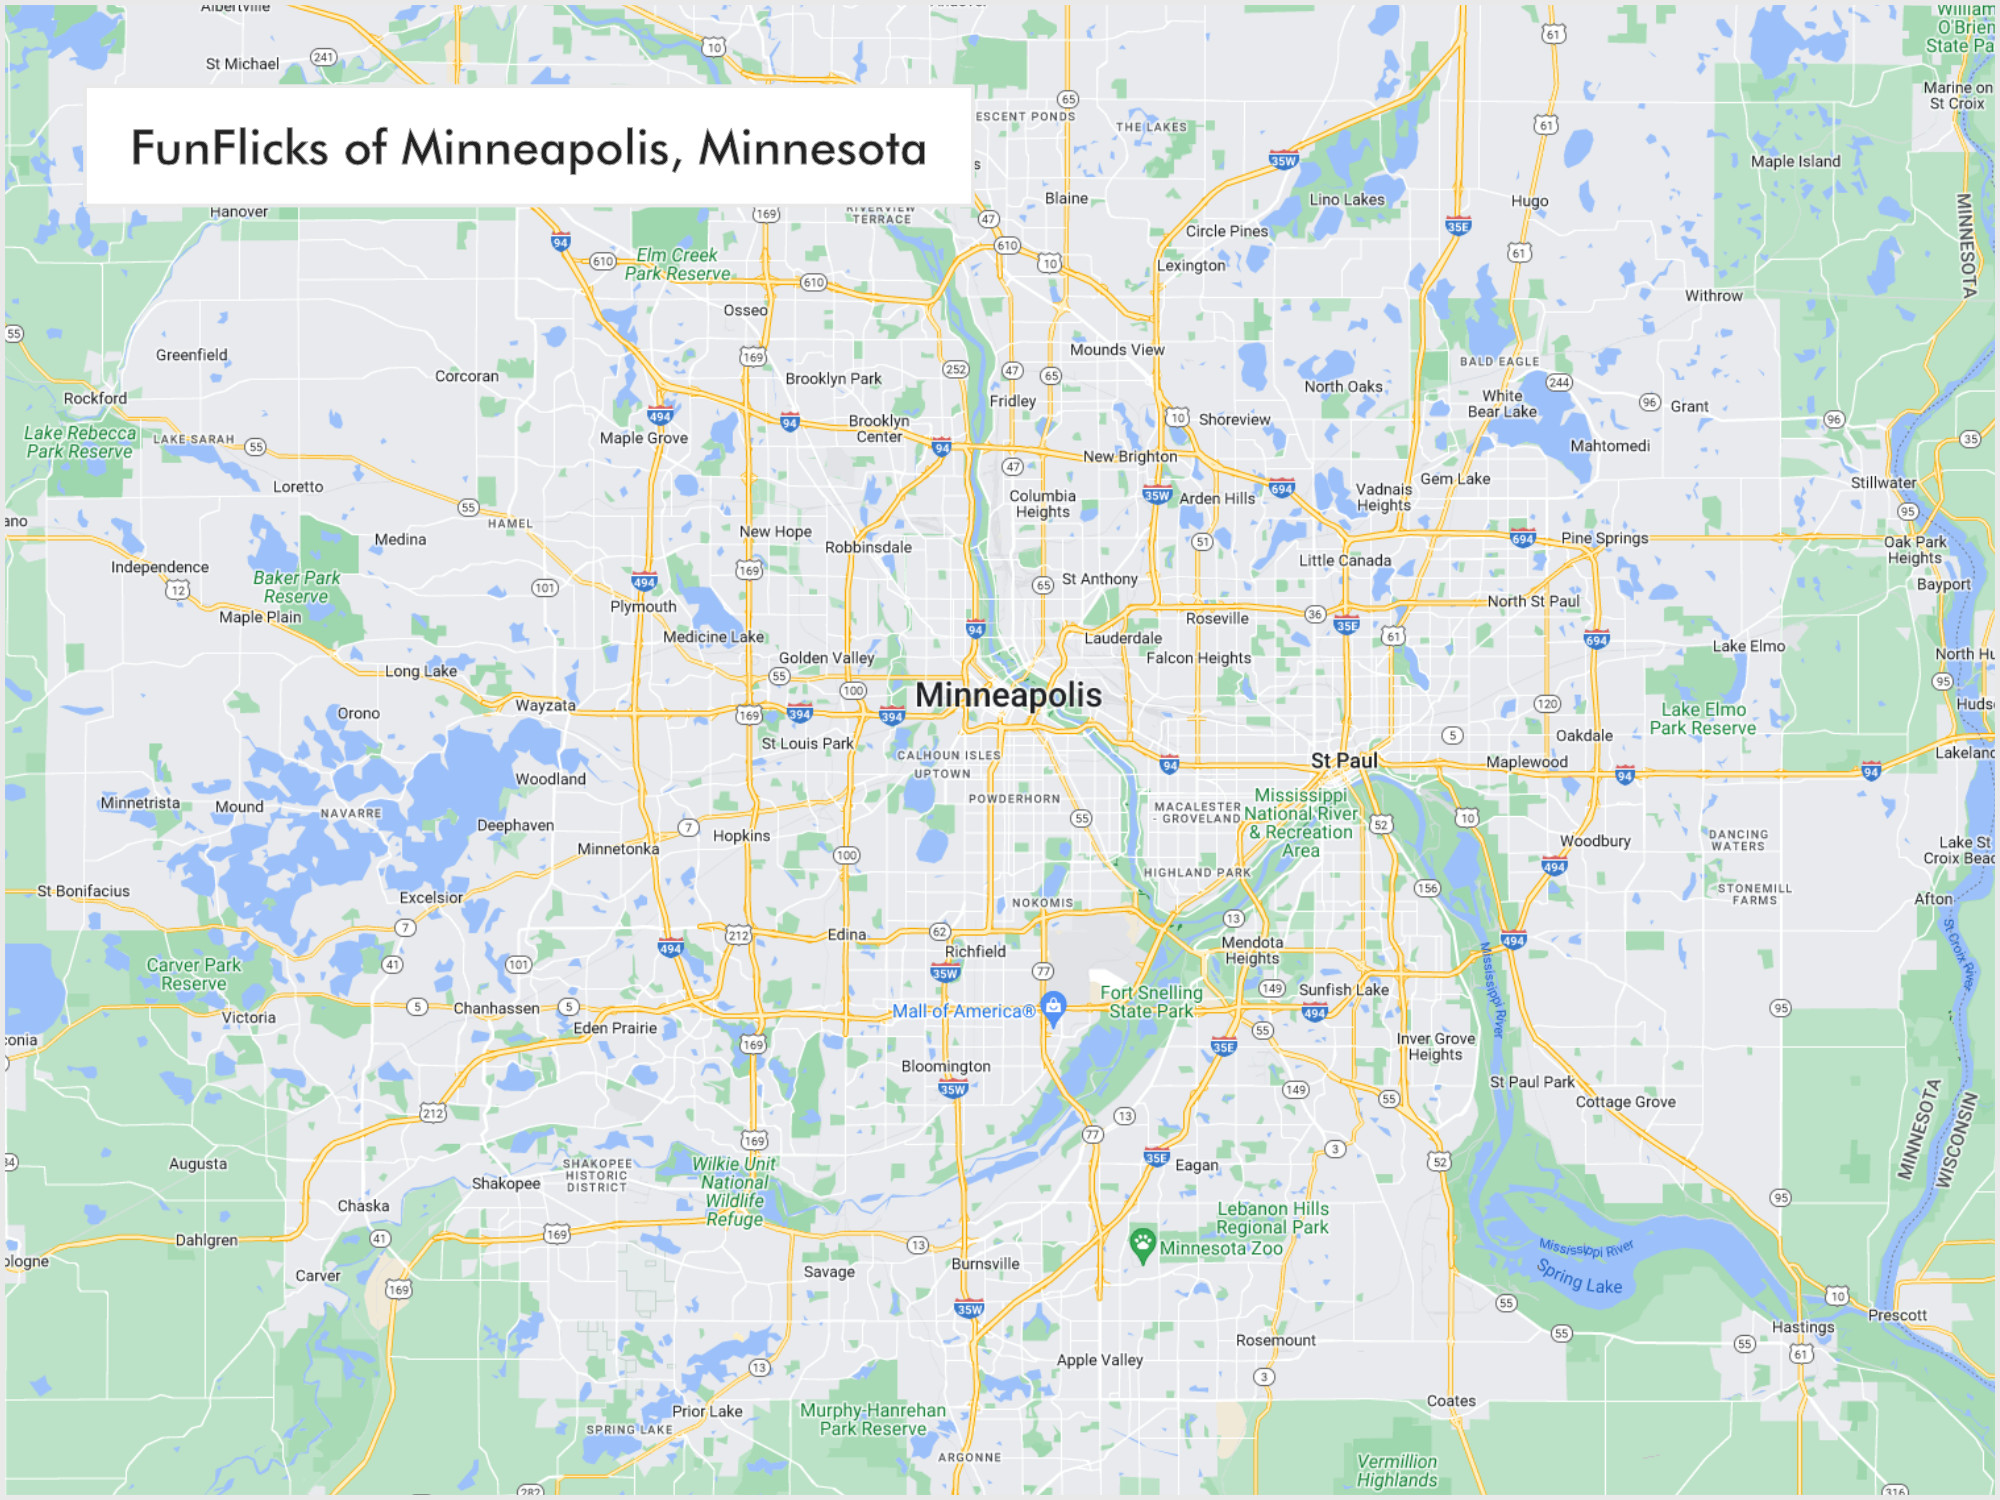 FunFlicks® Minneapolis territory map